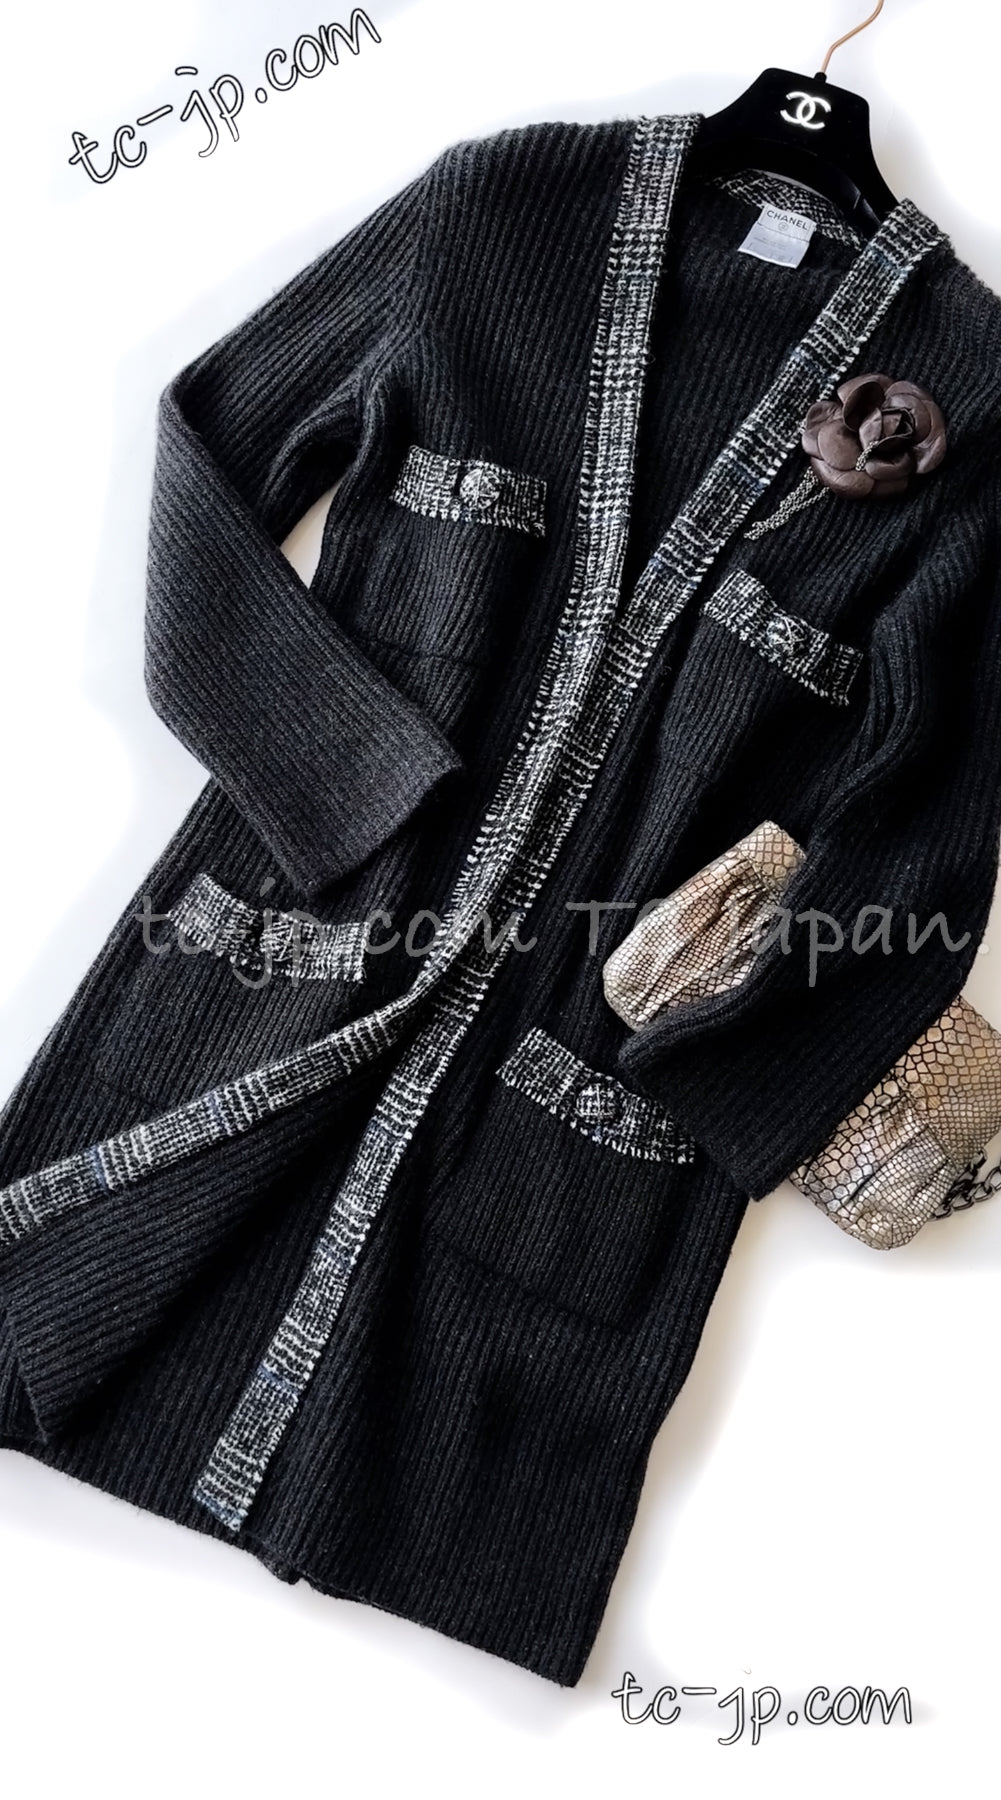 CHANEL 07A Charcoal Gray Cashmere 100% Long Cardigan Coat 42 44 シャネル チャコールグレー・カシミヤ100%・ロング・カーディガン・コート